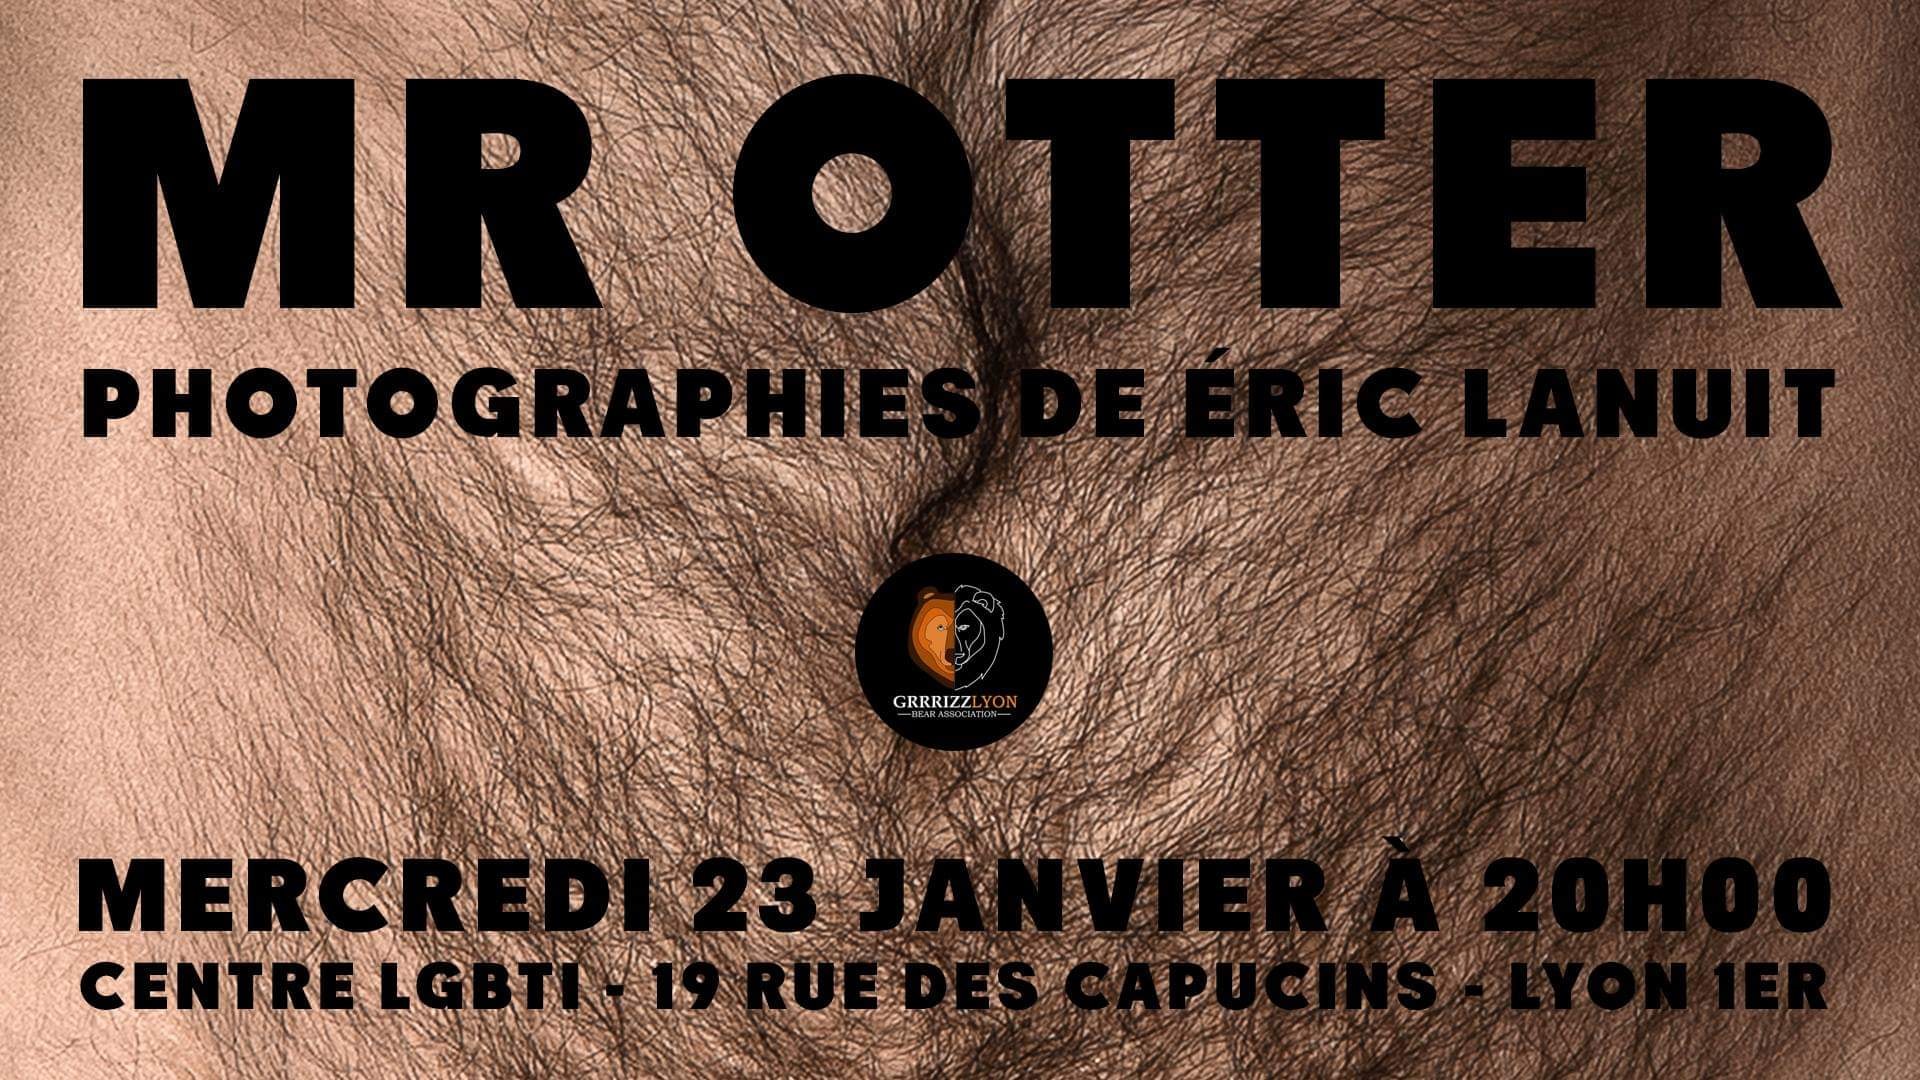 Mr Otter by Eric Lanuit Expo, Mercredi 23 janvier, Centre LGBTI